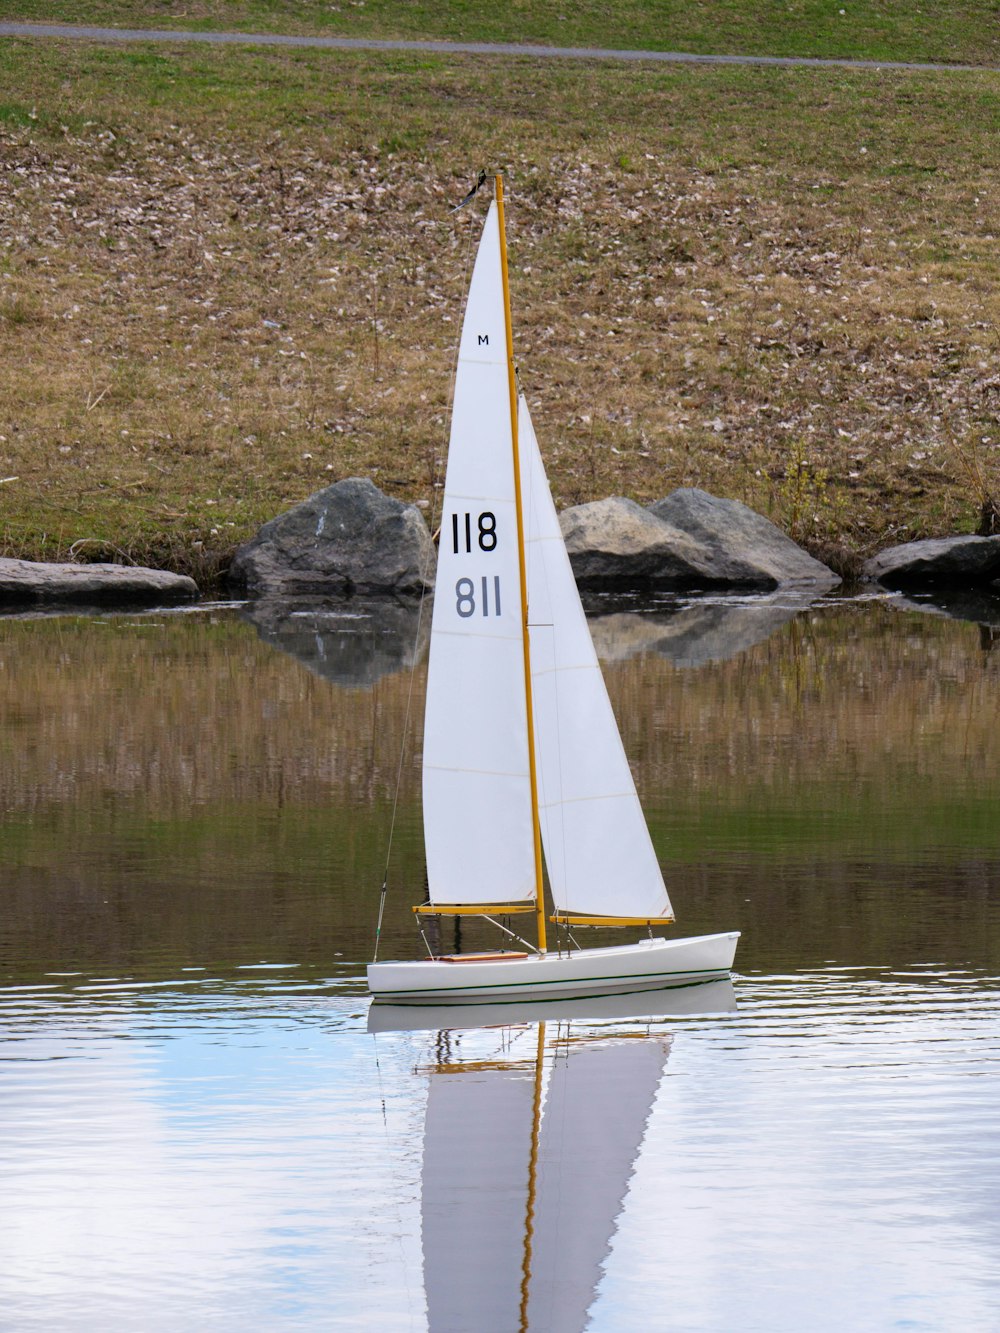 white sail boat on lake during daytime